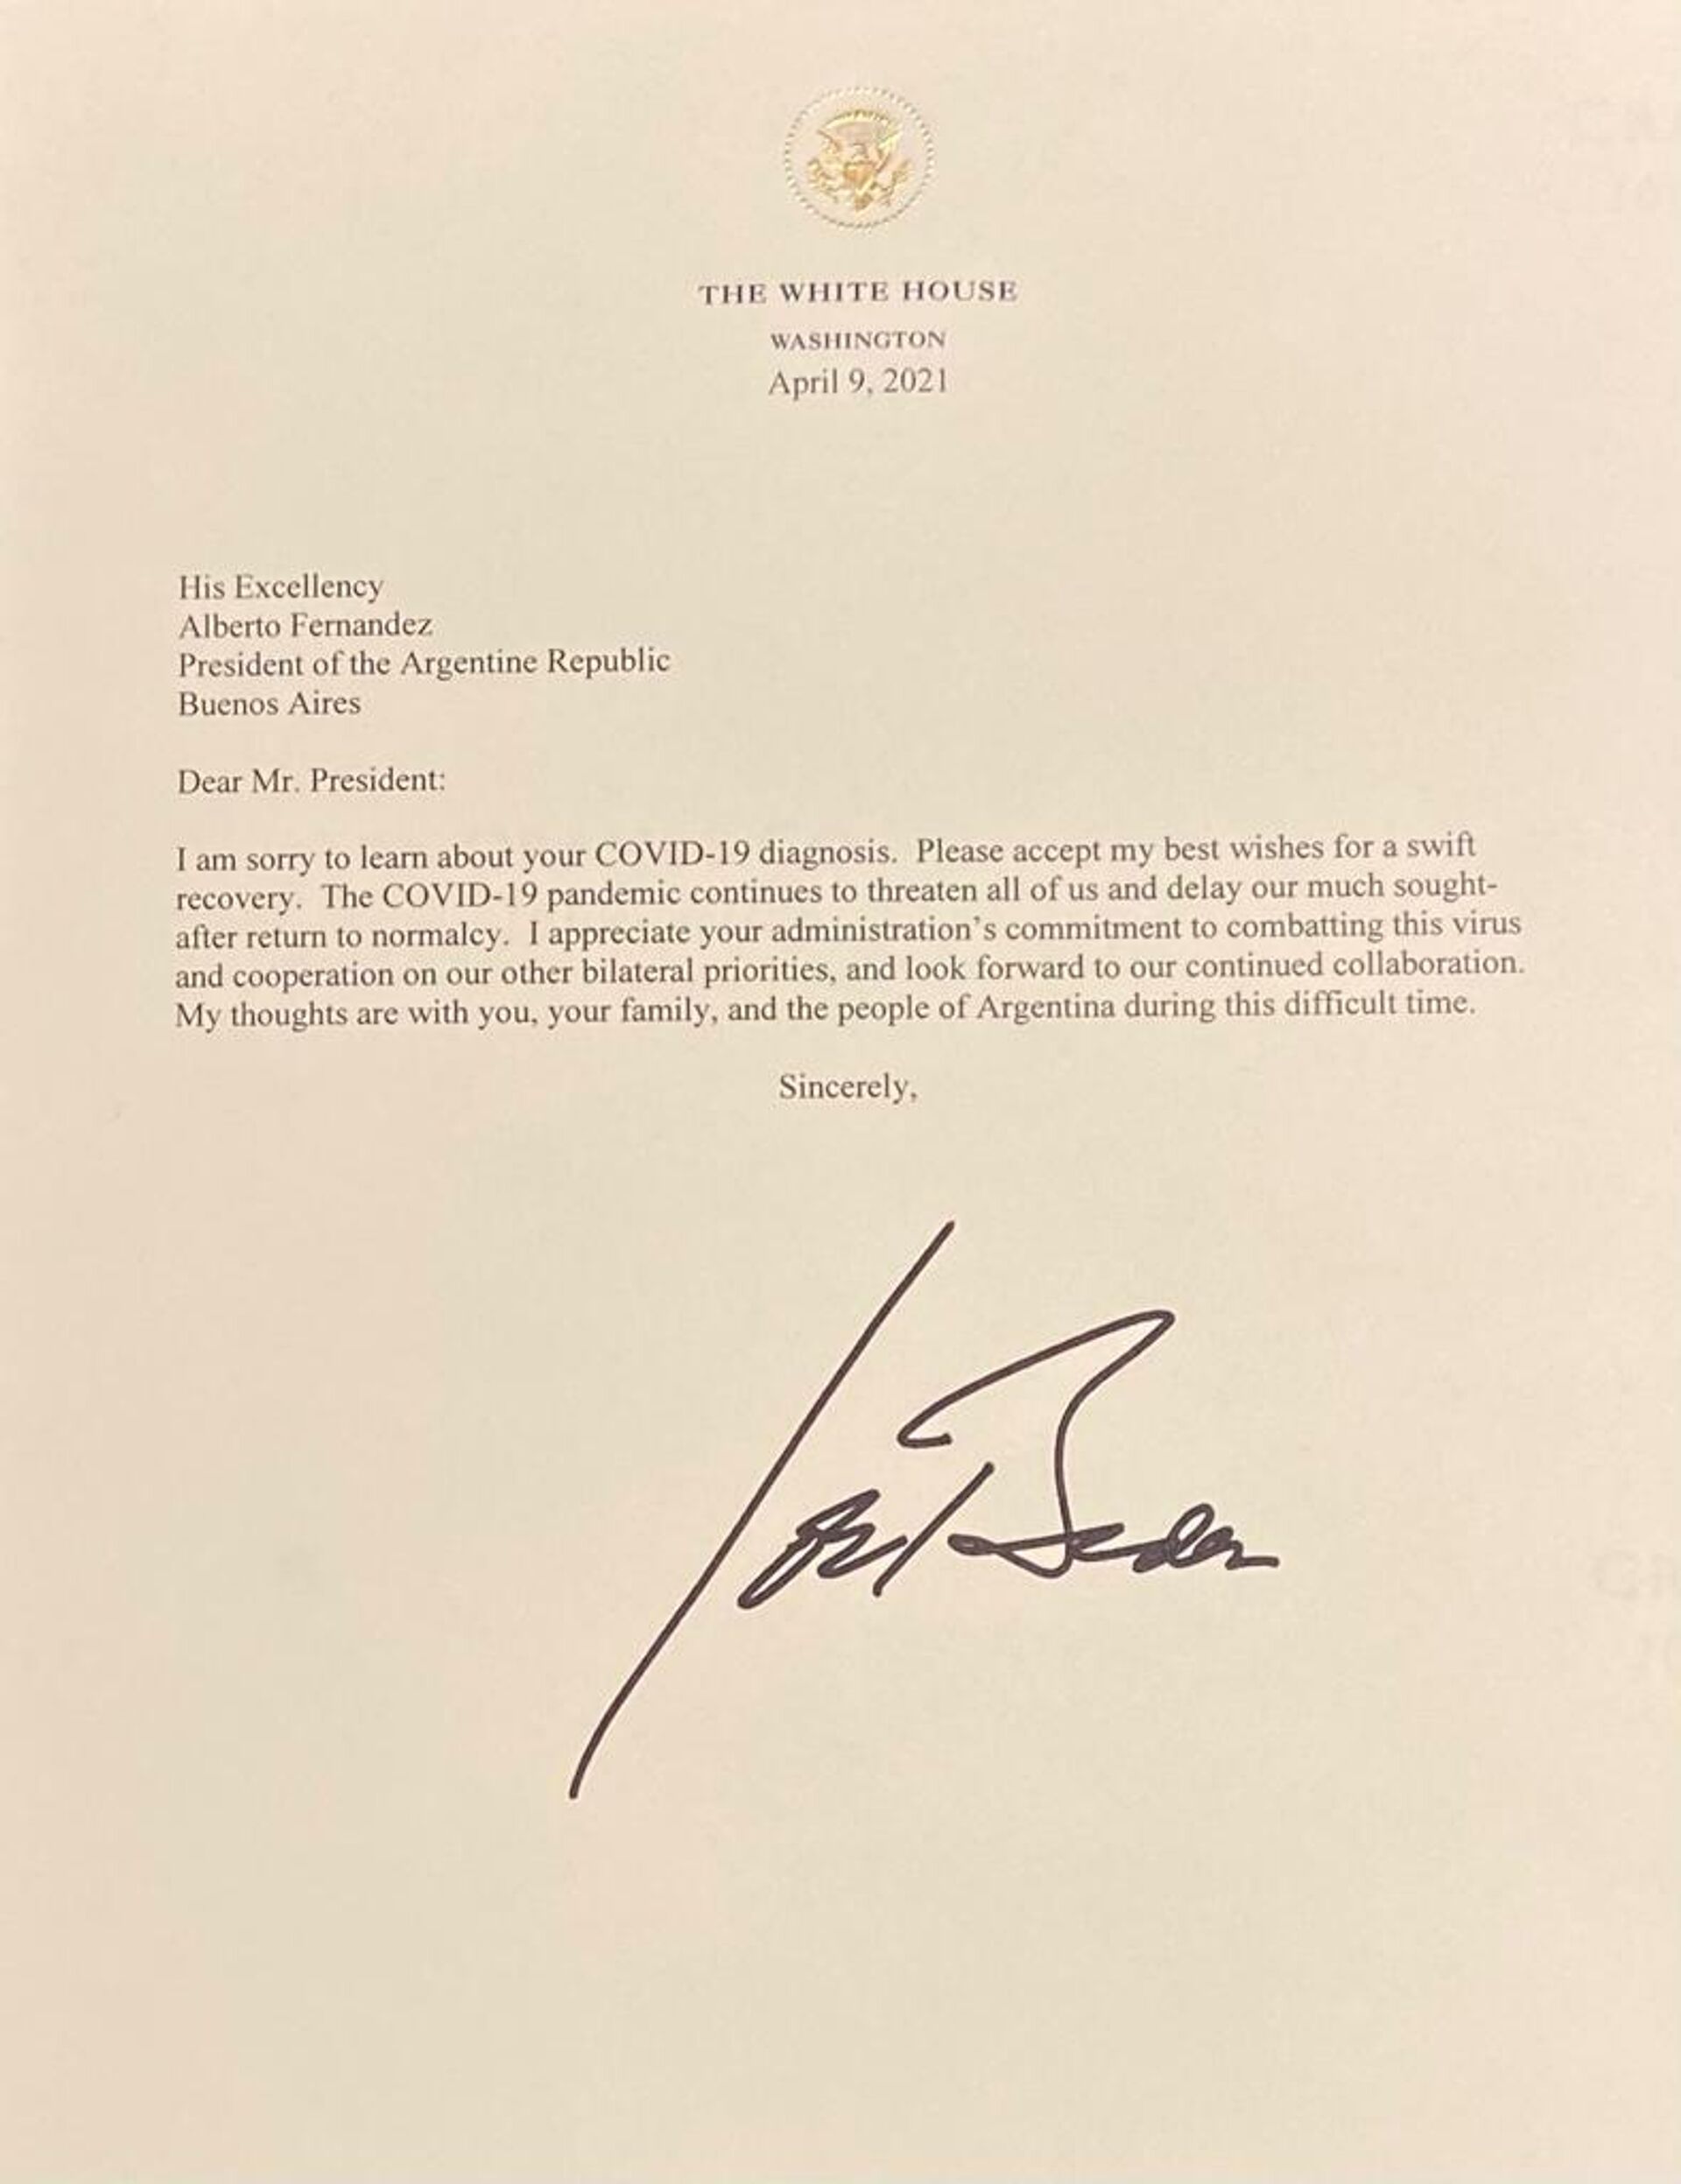 Carta de Joe Biden con deseos de pronta recuperación del COVID-19 para Alberto Fernández - Sputnik Mundo, 1920, 14.04.2021